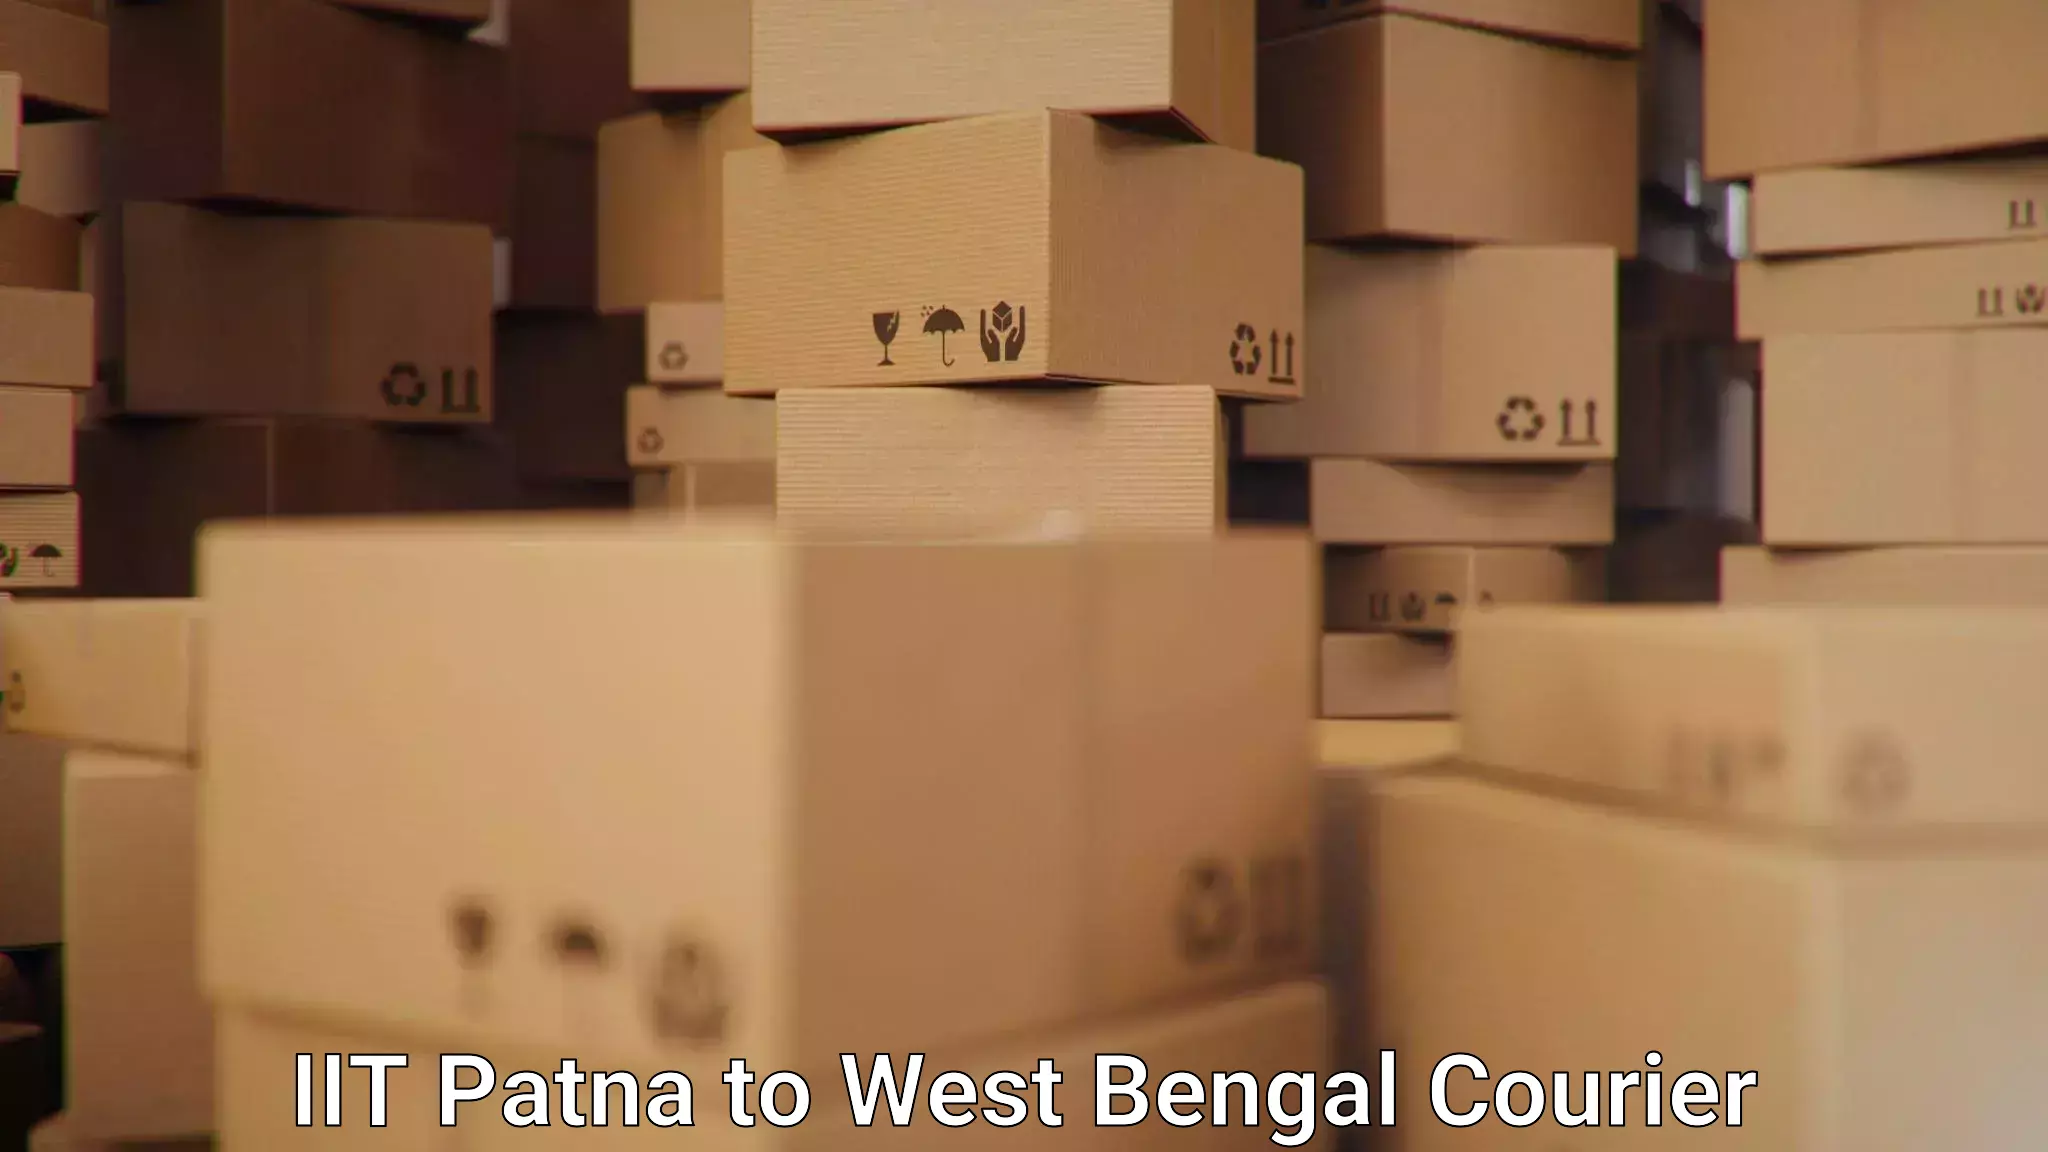 Flexible delivery schedules IIT Patna to Binnaguri